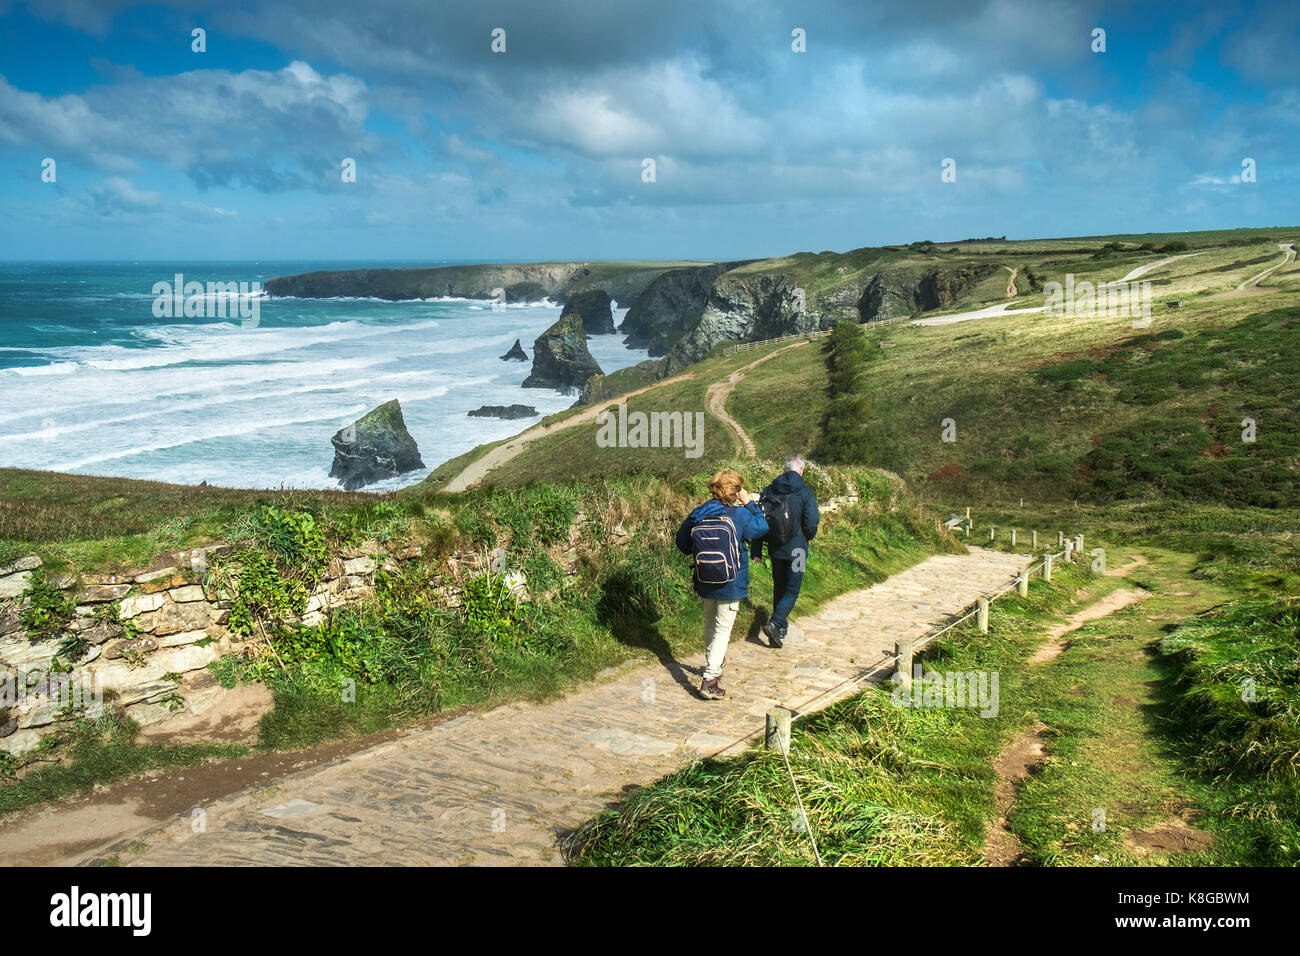 Bedruthan Steps - les promeneurs sur le sentier du littoral au Bedruthan Steps sur la côte nord des Cornouailles. Banque D'Images